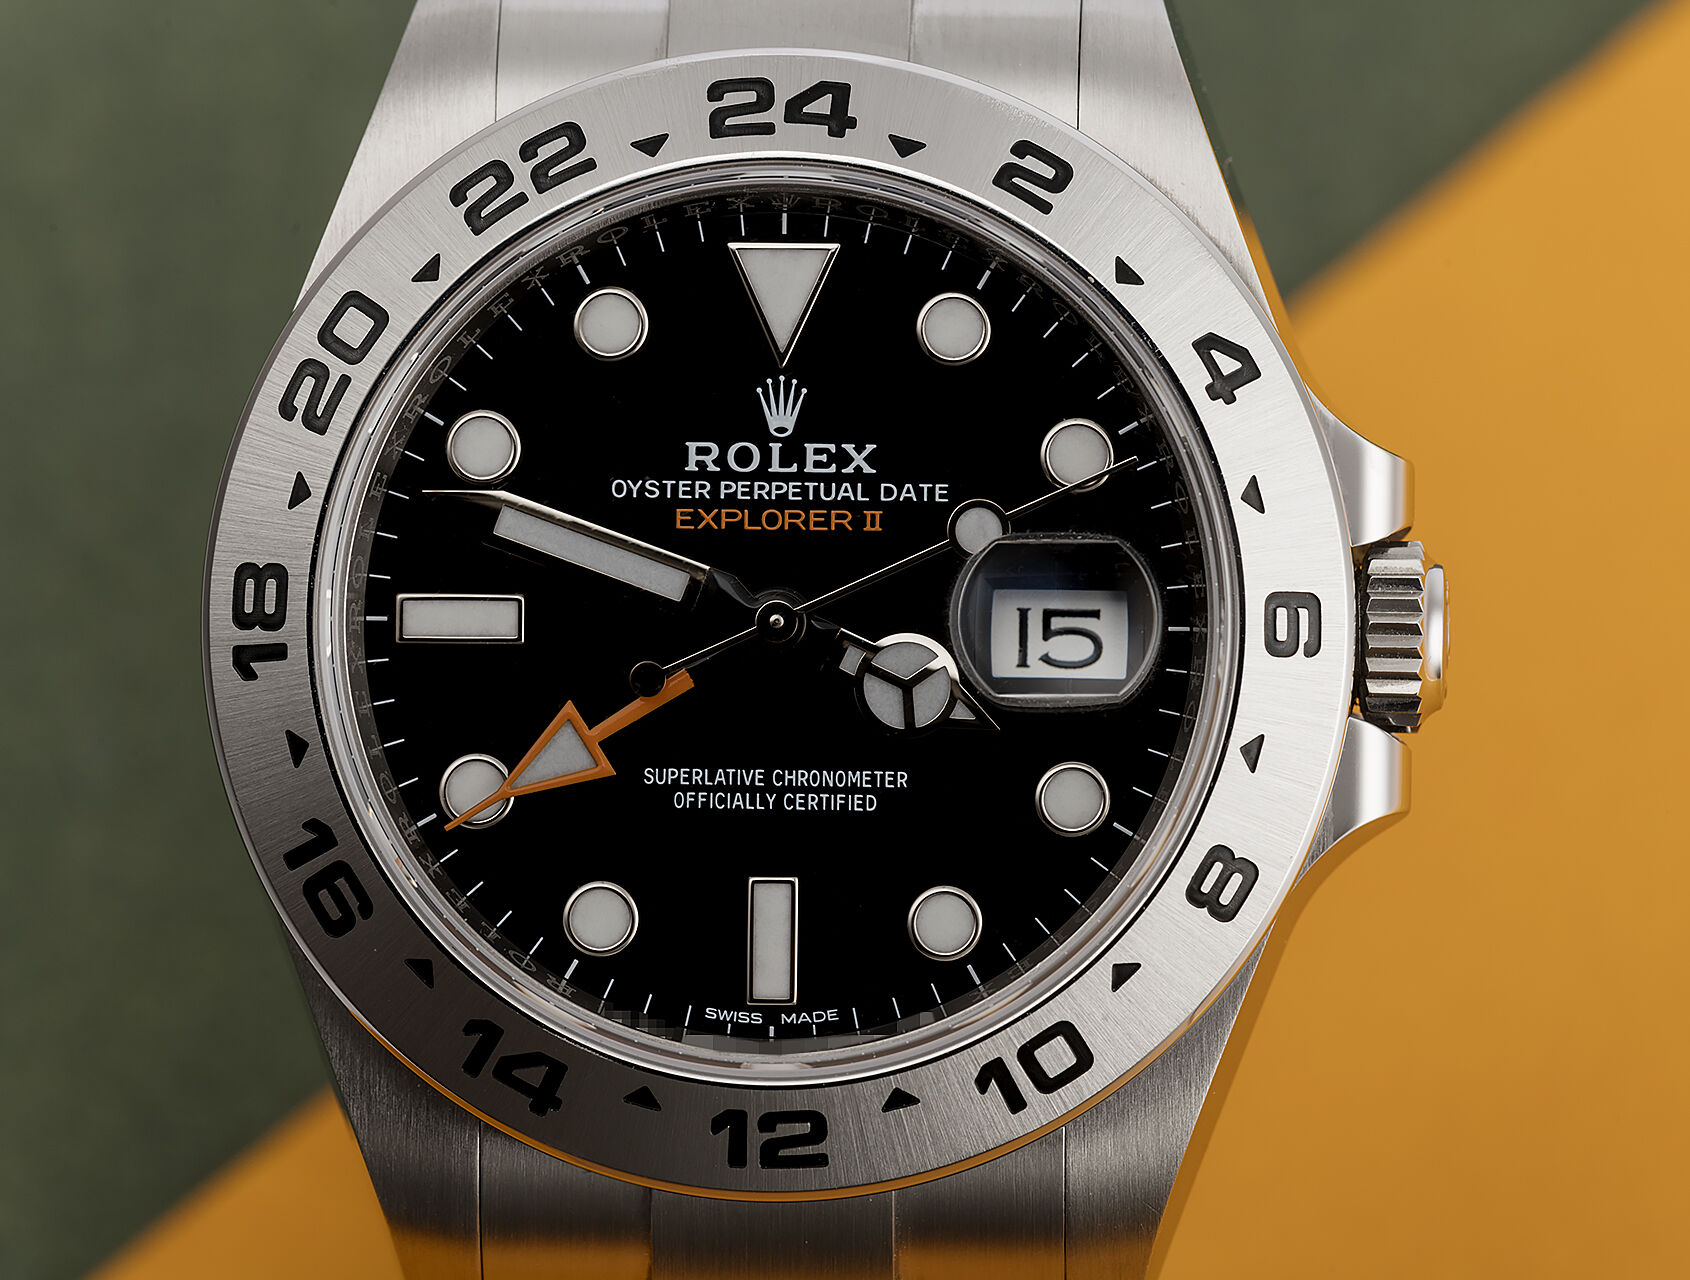 ref 216570 | 216570 - Box & Certificate | Rolex Explorer II